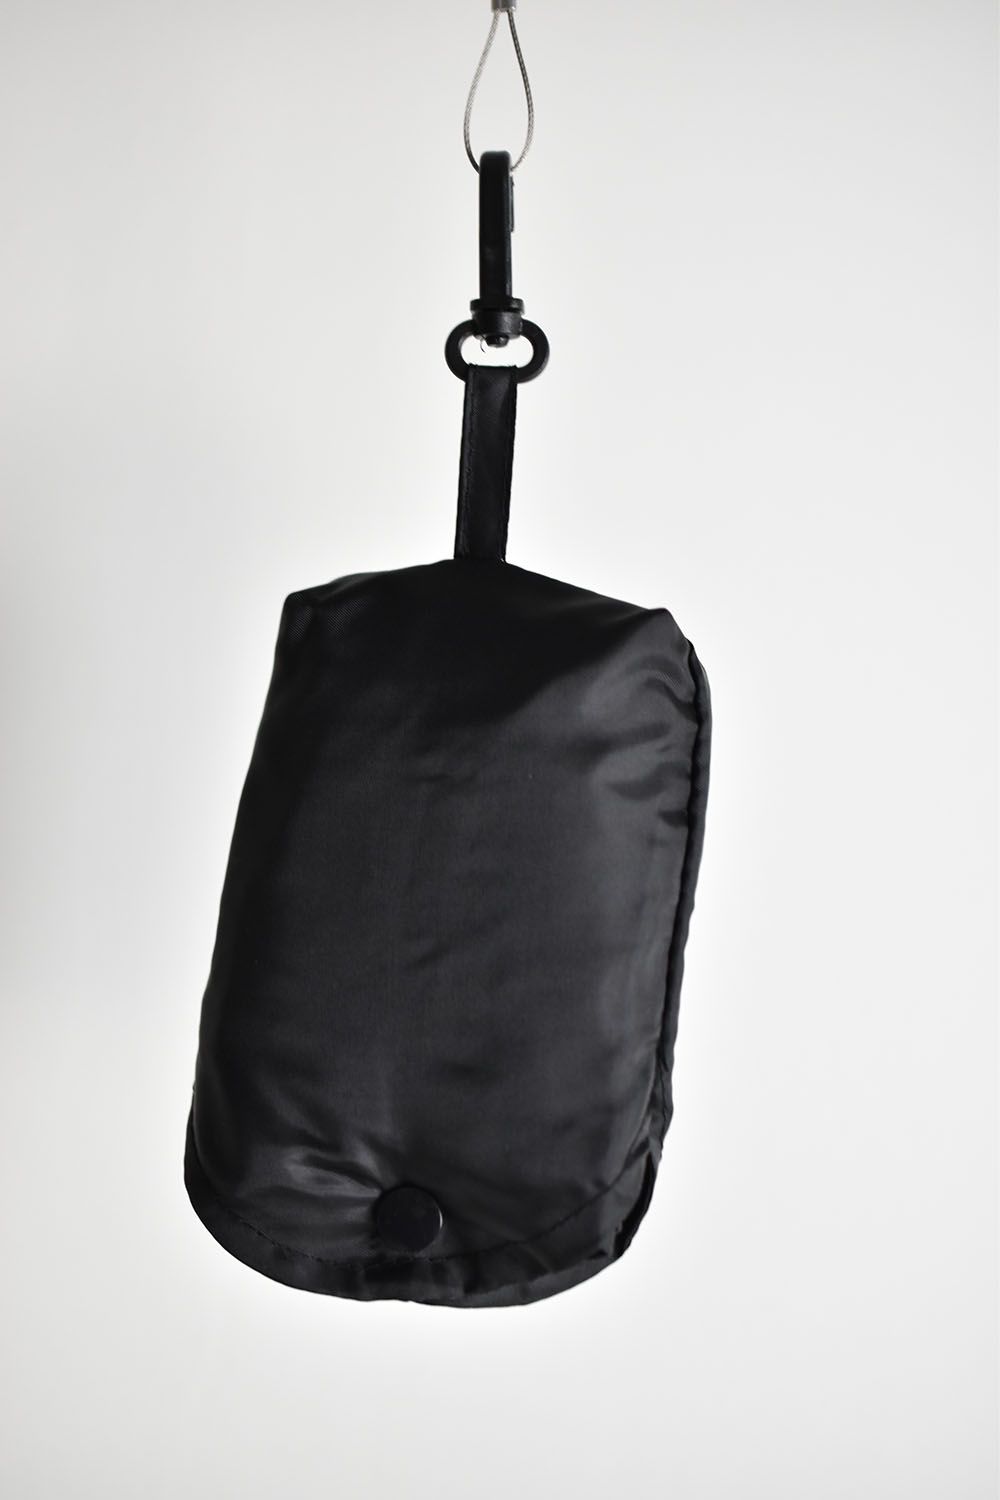 Eco Bag"Black"/エコバック"ブラック"(RIPVANWINKLEの商品お買い上げでプレゼント)